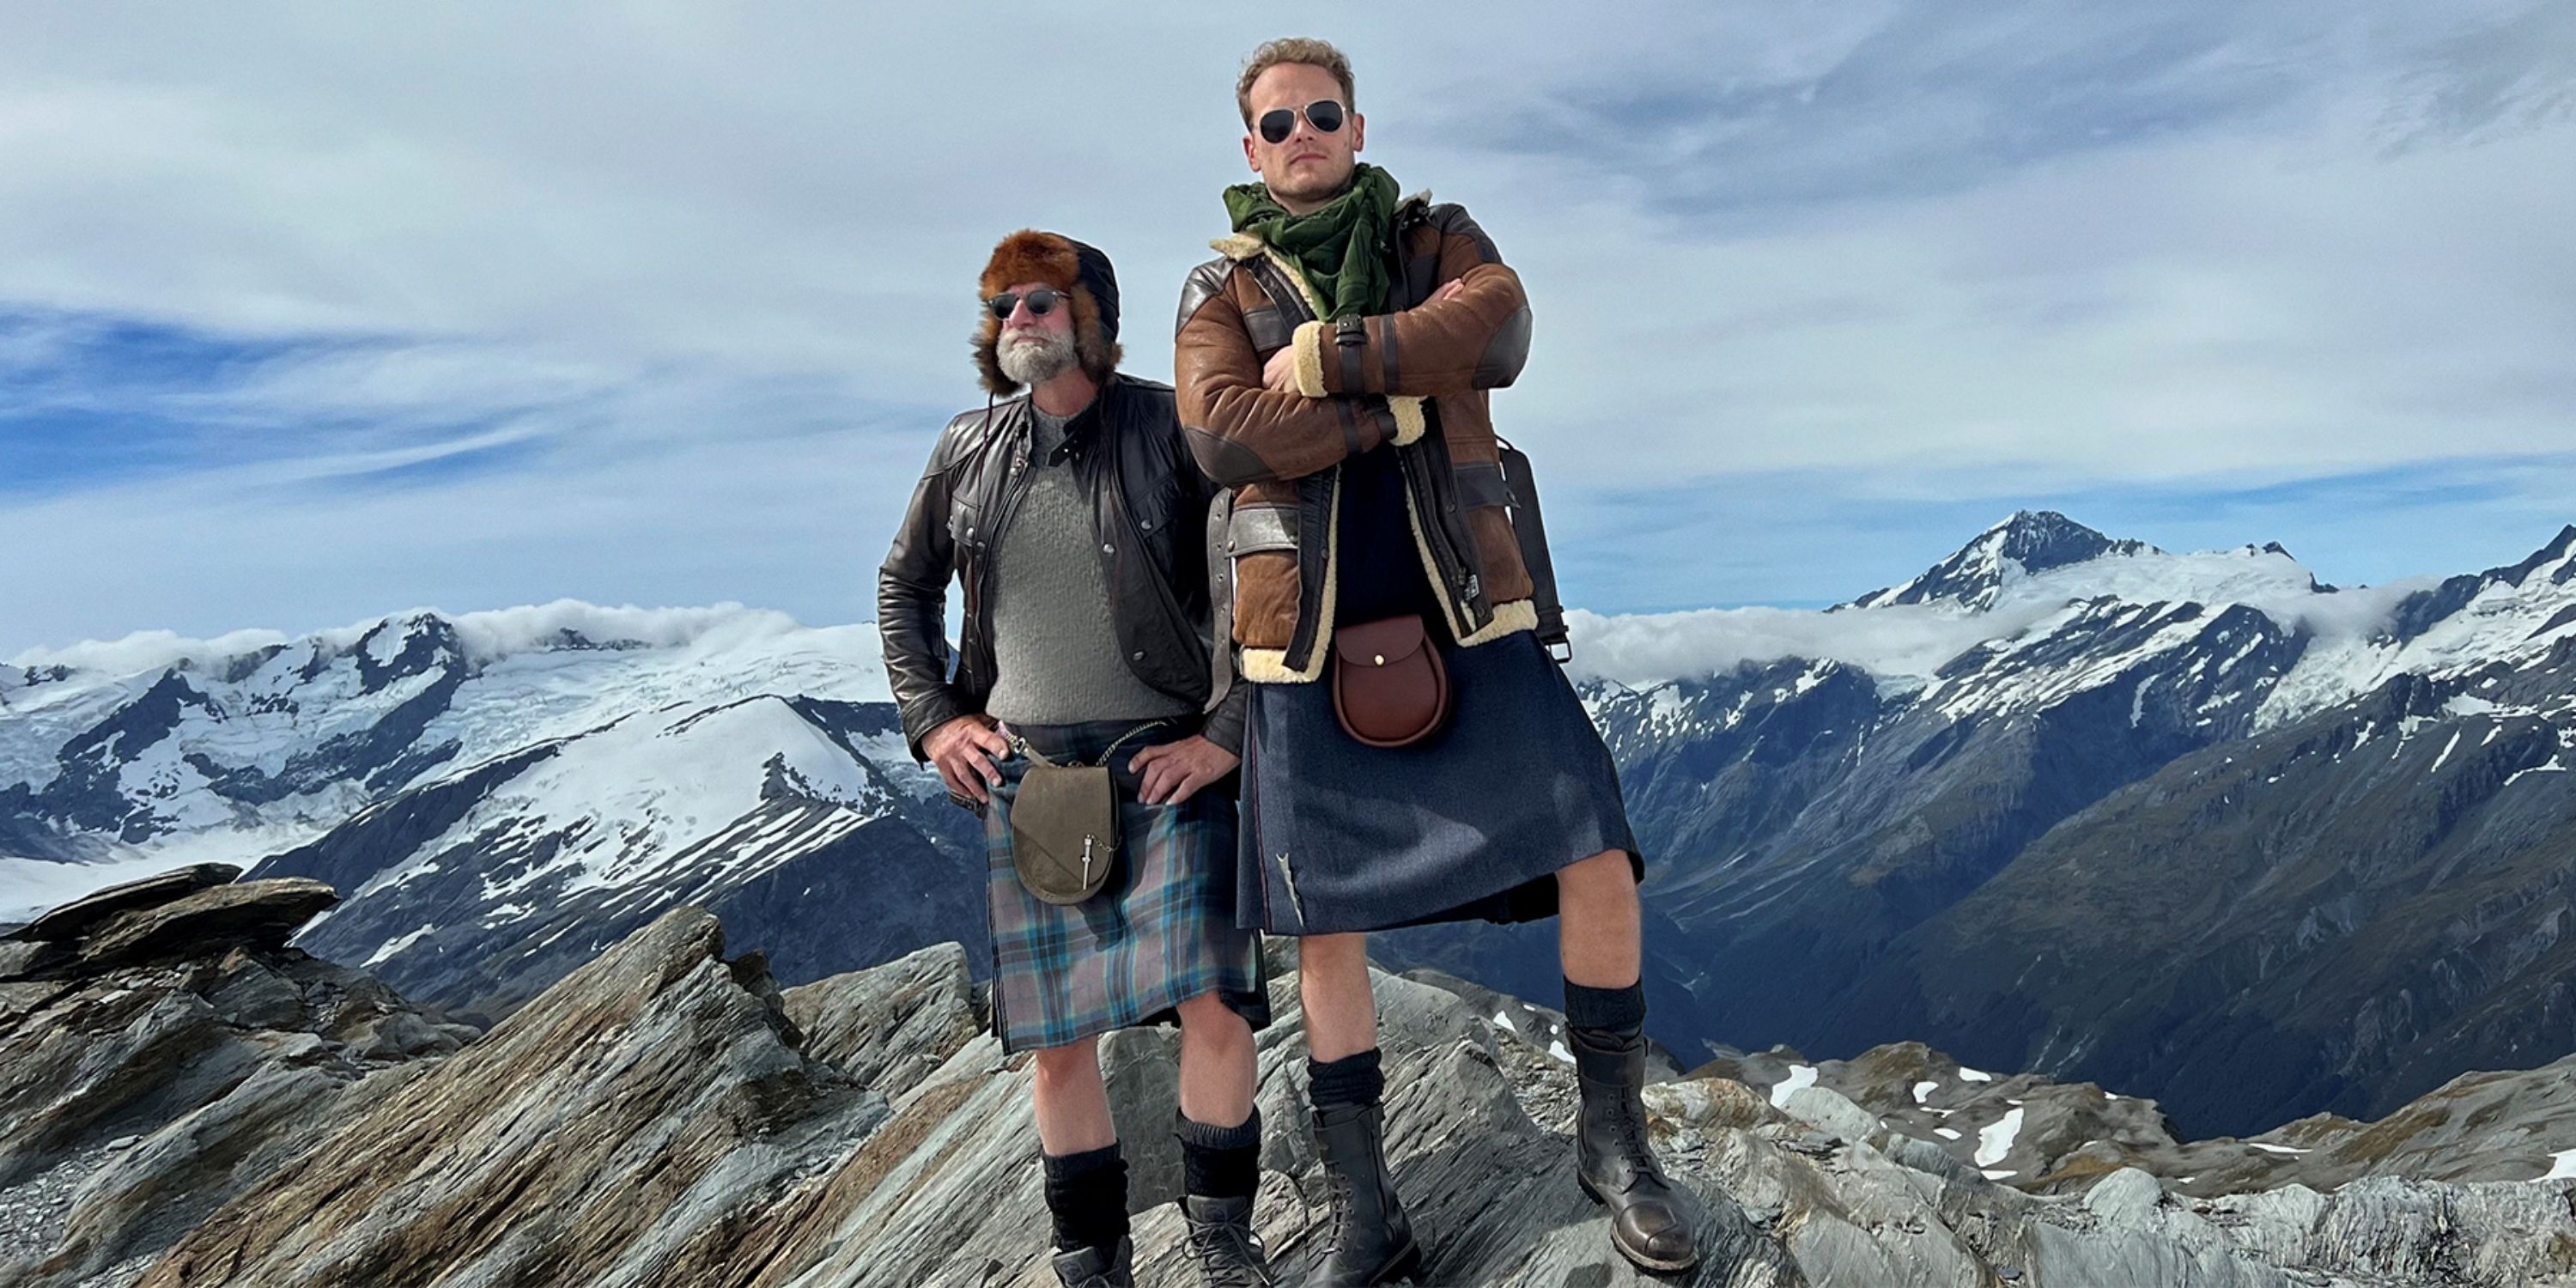 ‘Clanlands’ Sees Sam Heughan & Graham McTavish Adventure in New Zealand